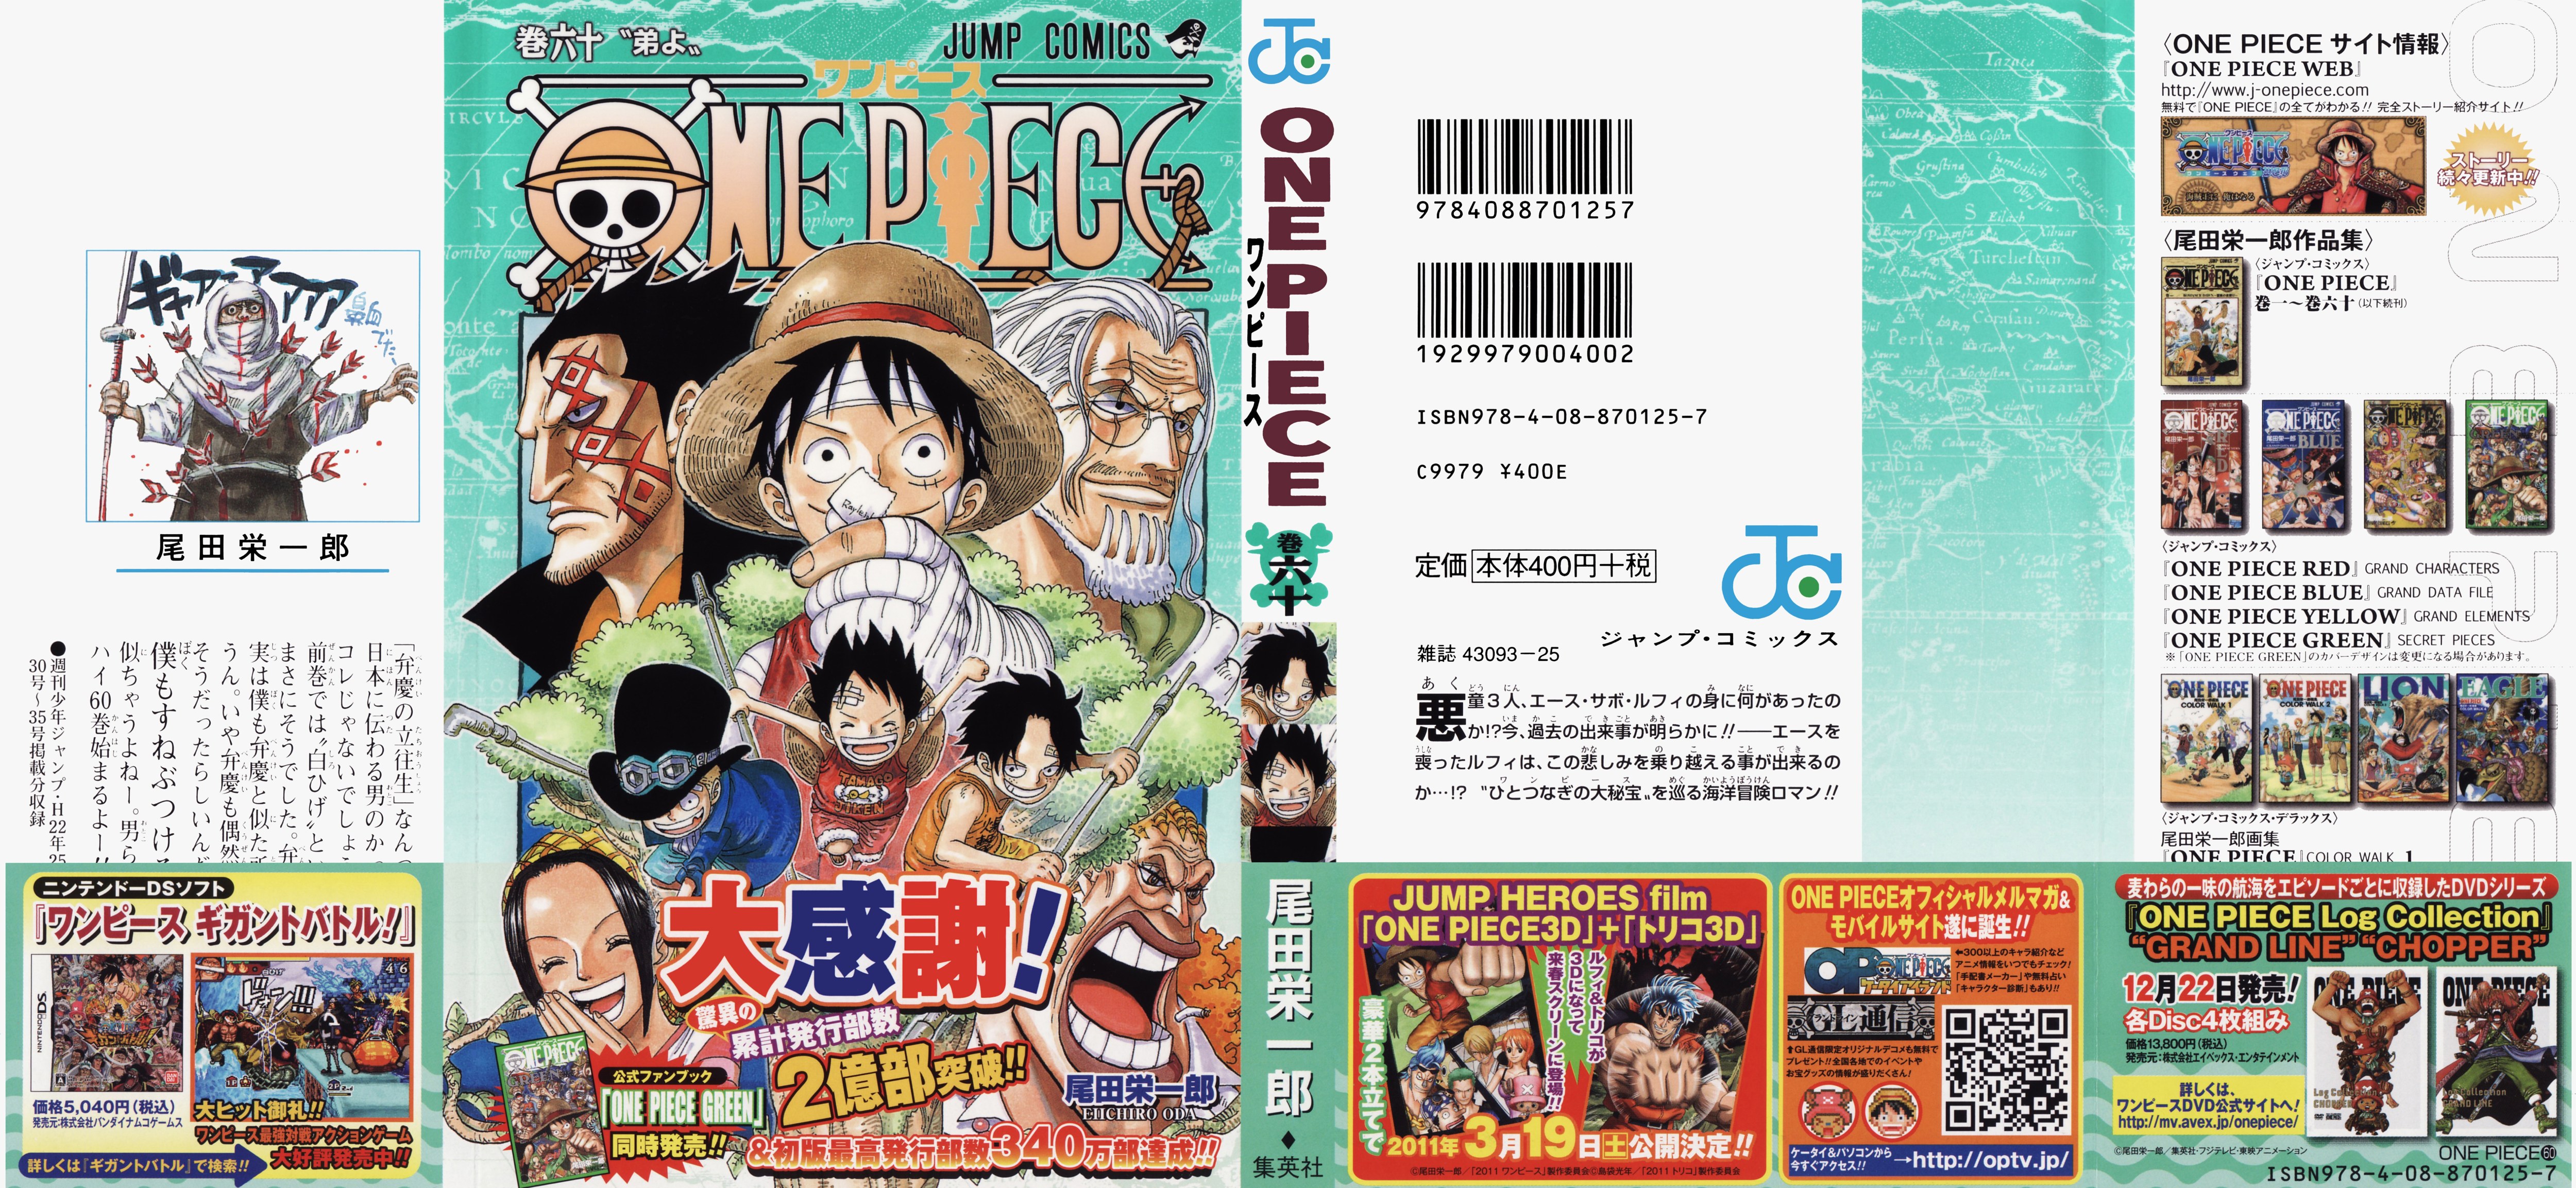 One Piece Vol 60 Cover Shq 2 Mq One Piece Vol 60 Cover Shq 2 Mq Jpg Image Turboimagehost Com